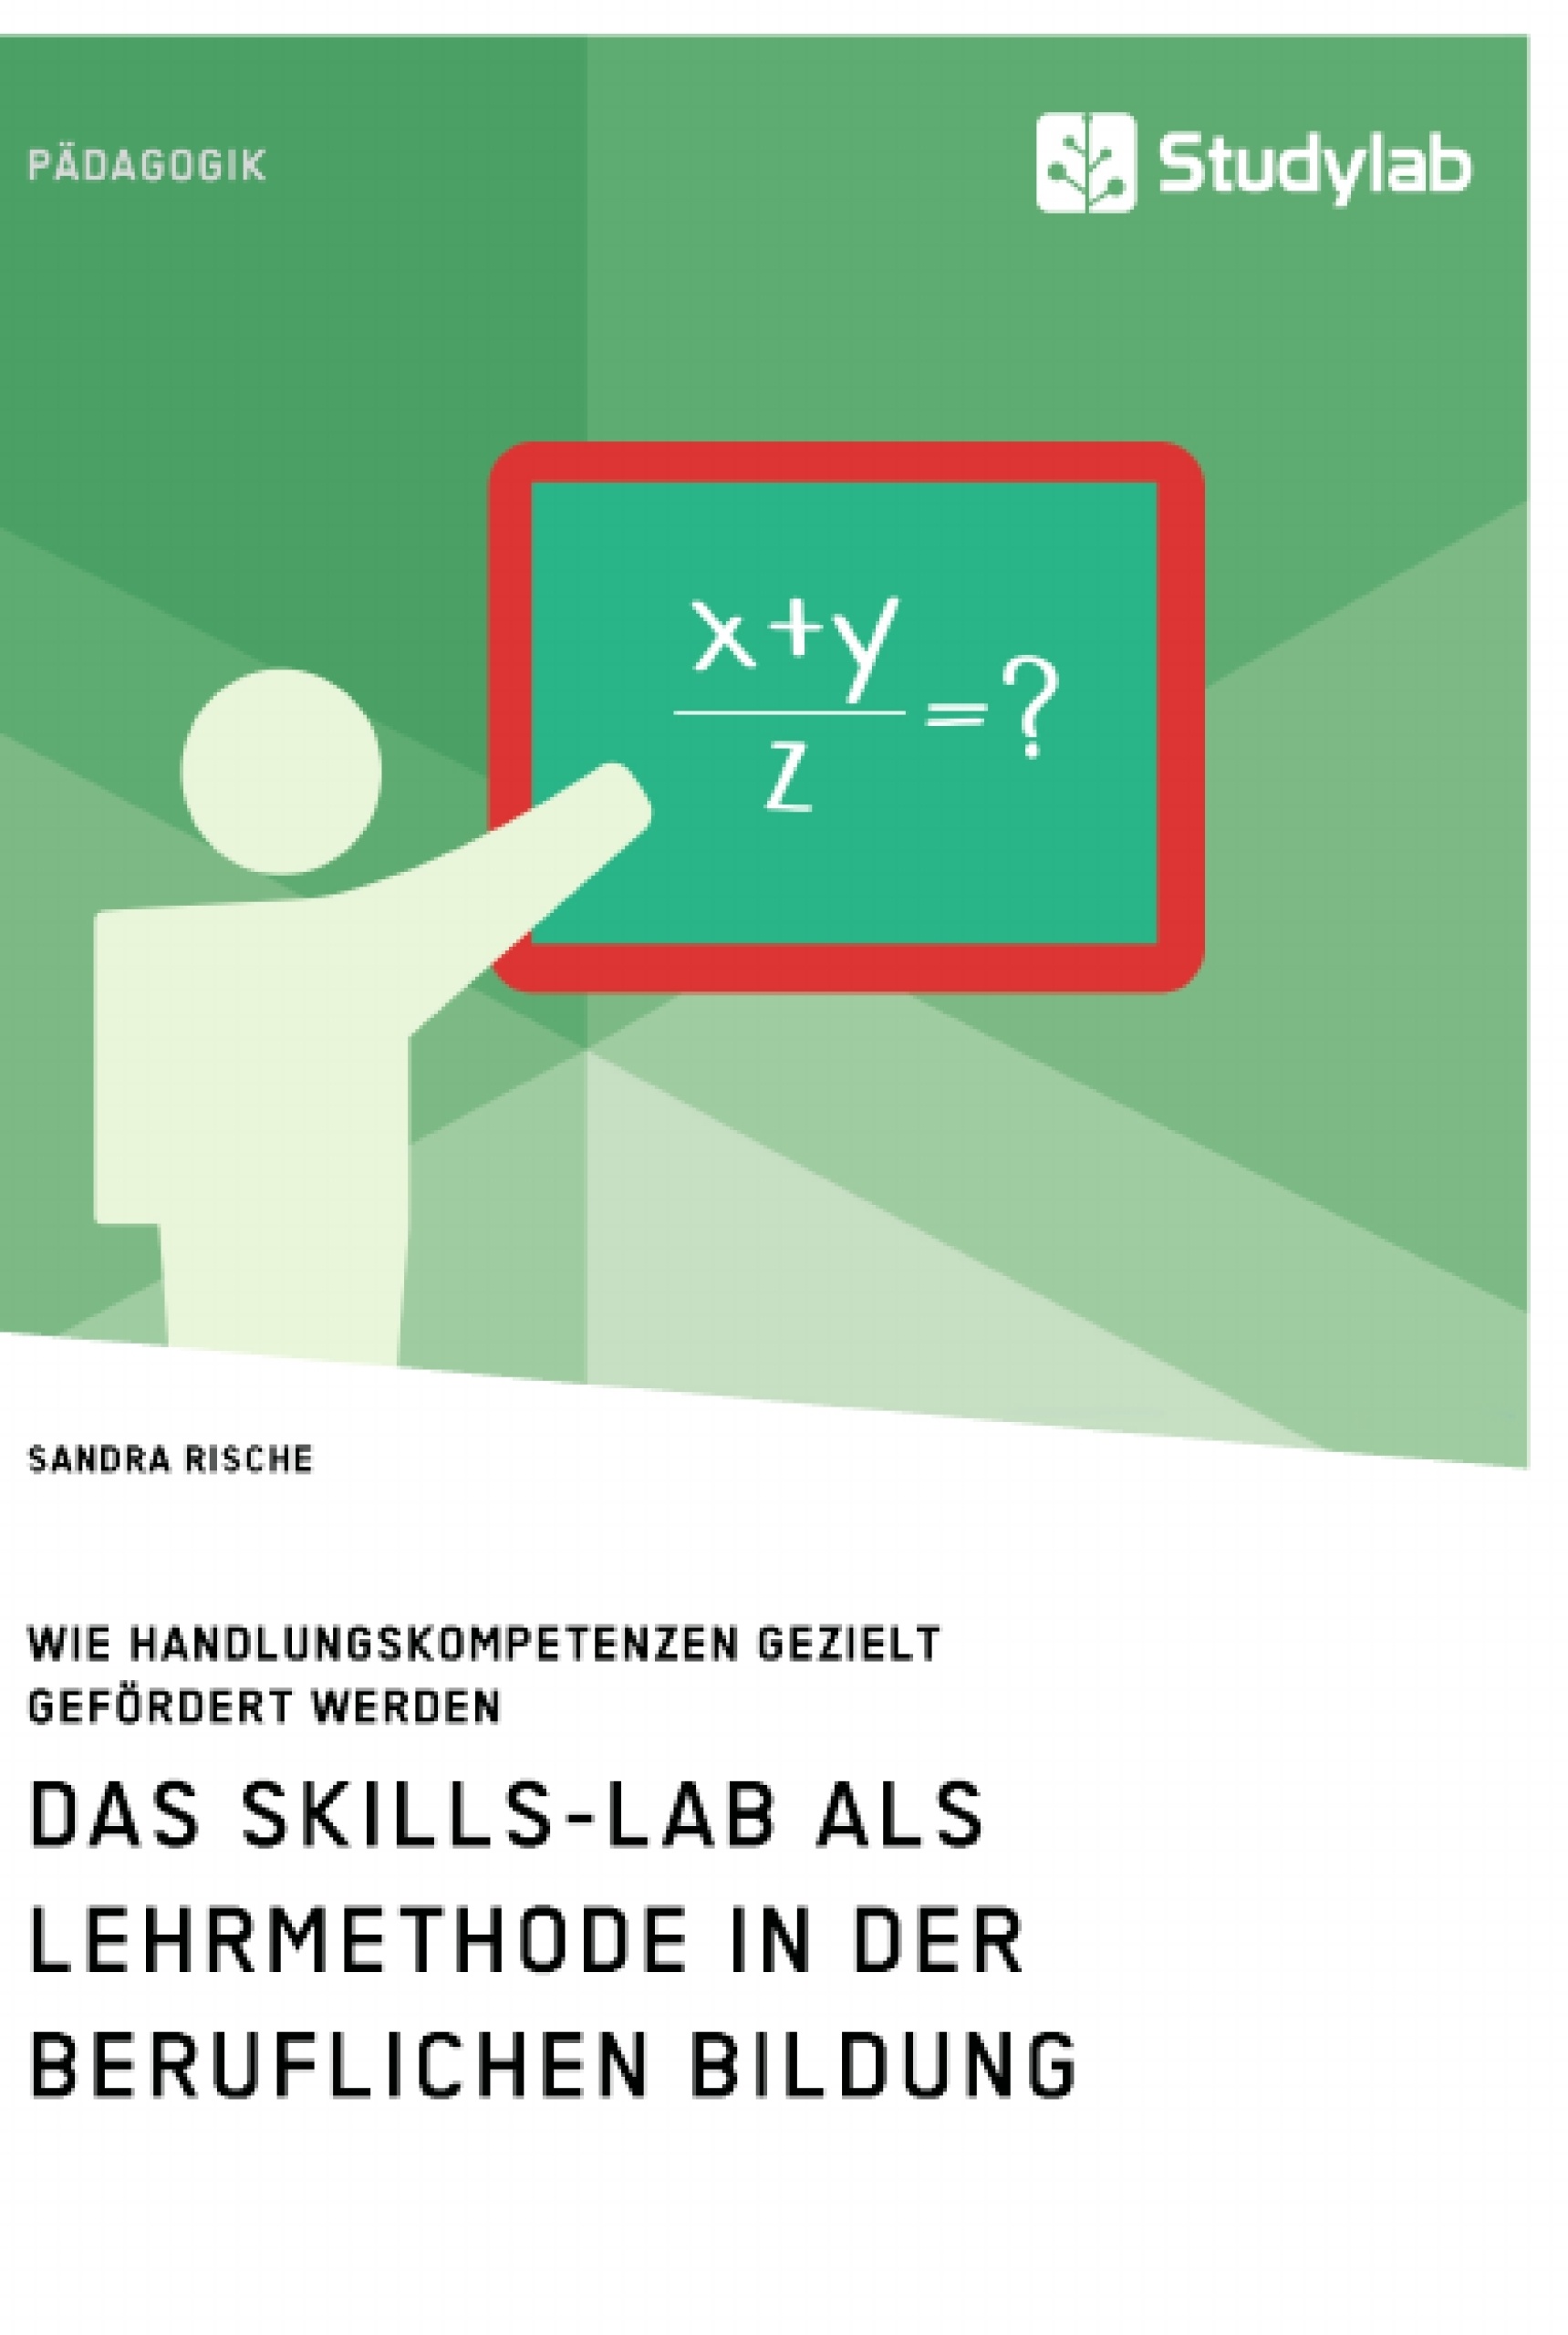 Titre: Das Skills-Lab als Lehrmethode in der beruflichen Bildung. Wie Handlungskompetenzen gezielt gefördert werden